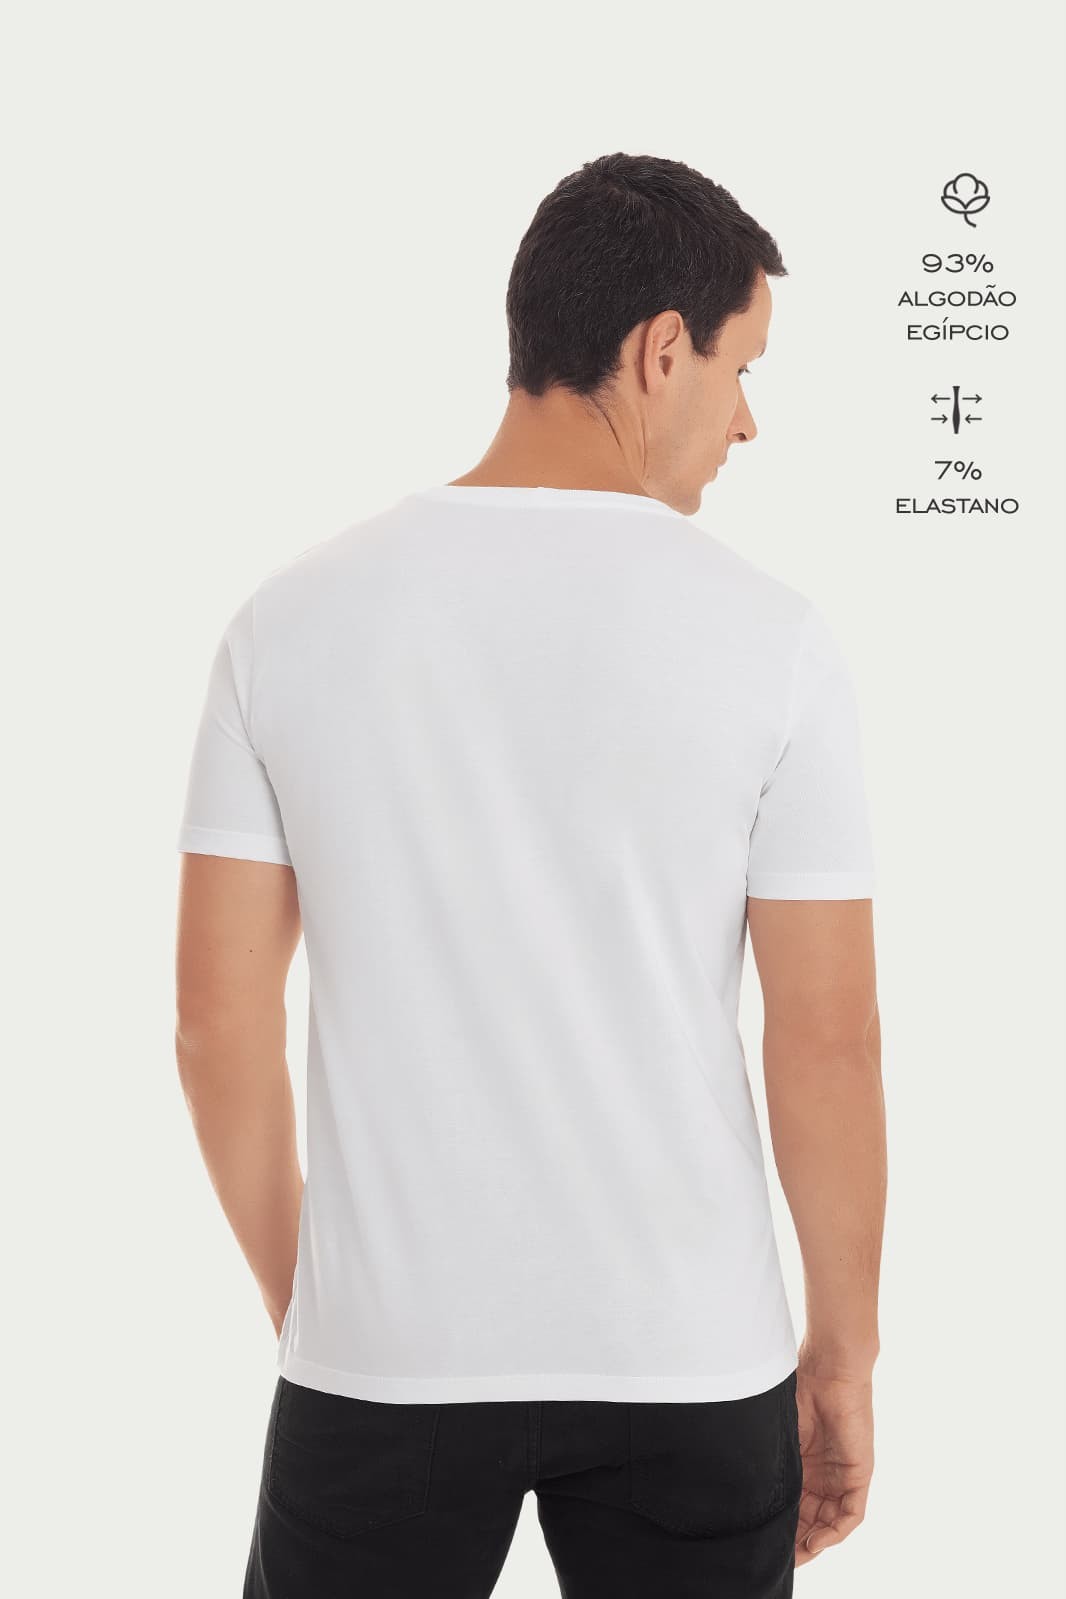 Kit Camiseta Básica Algodão Egípcio Gola C com 3 cores